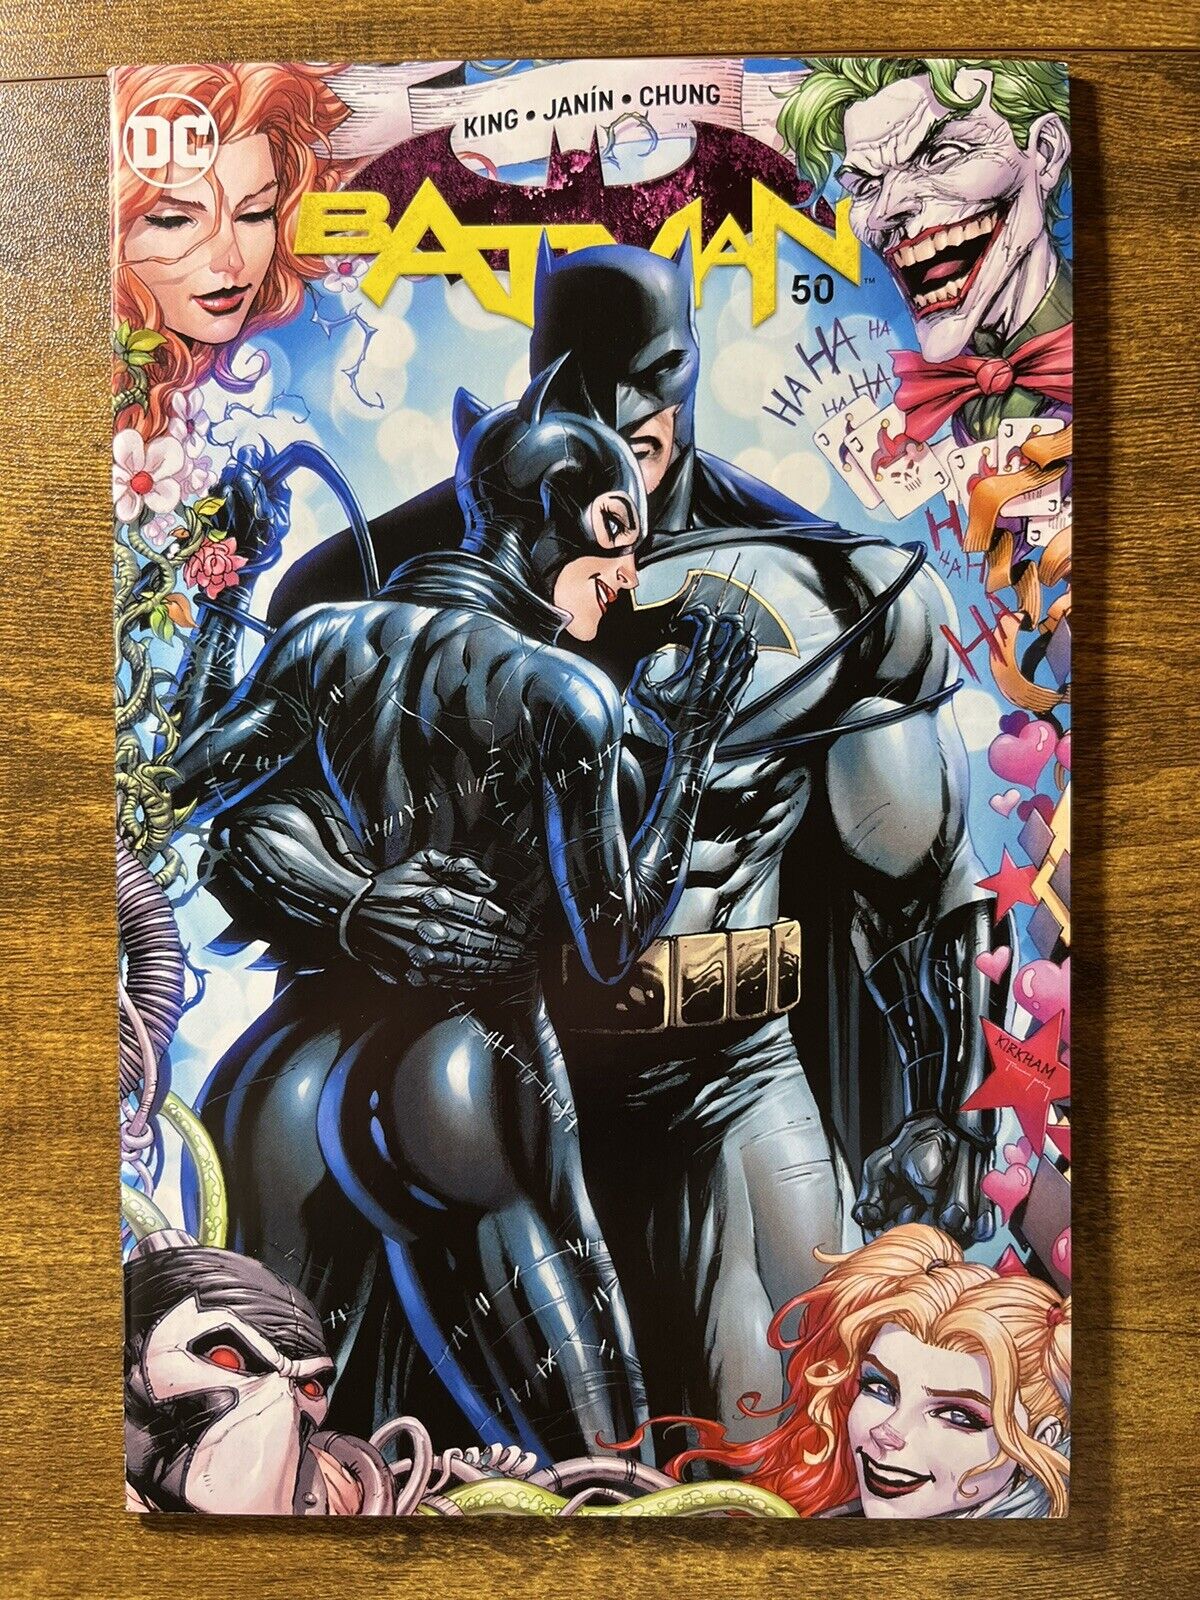 BATMAN 50 GORGEOUS TYLER KIRKHAM UNKNOWN COMICS EXCLUSIVE VARIANT COVER DC 2018